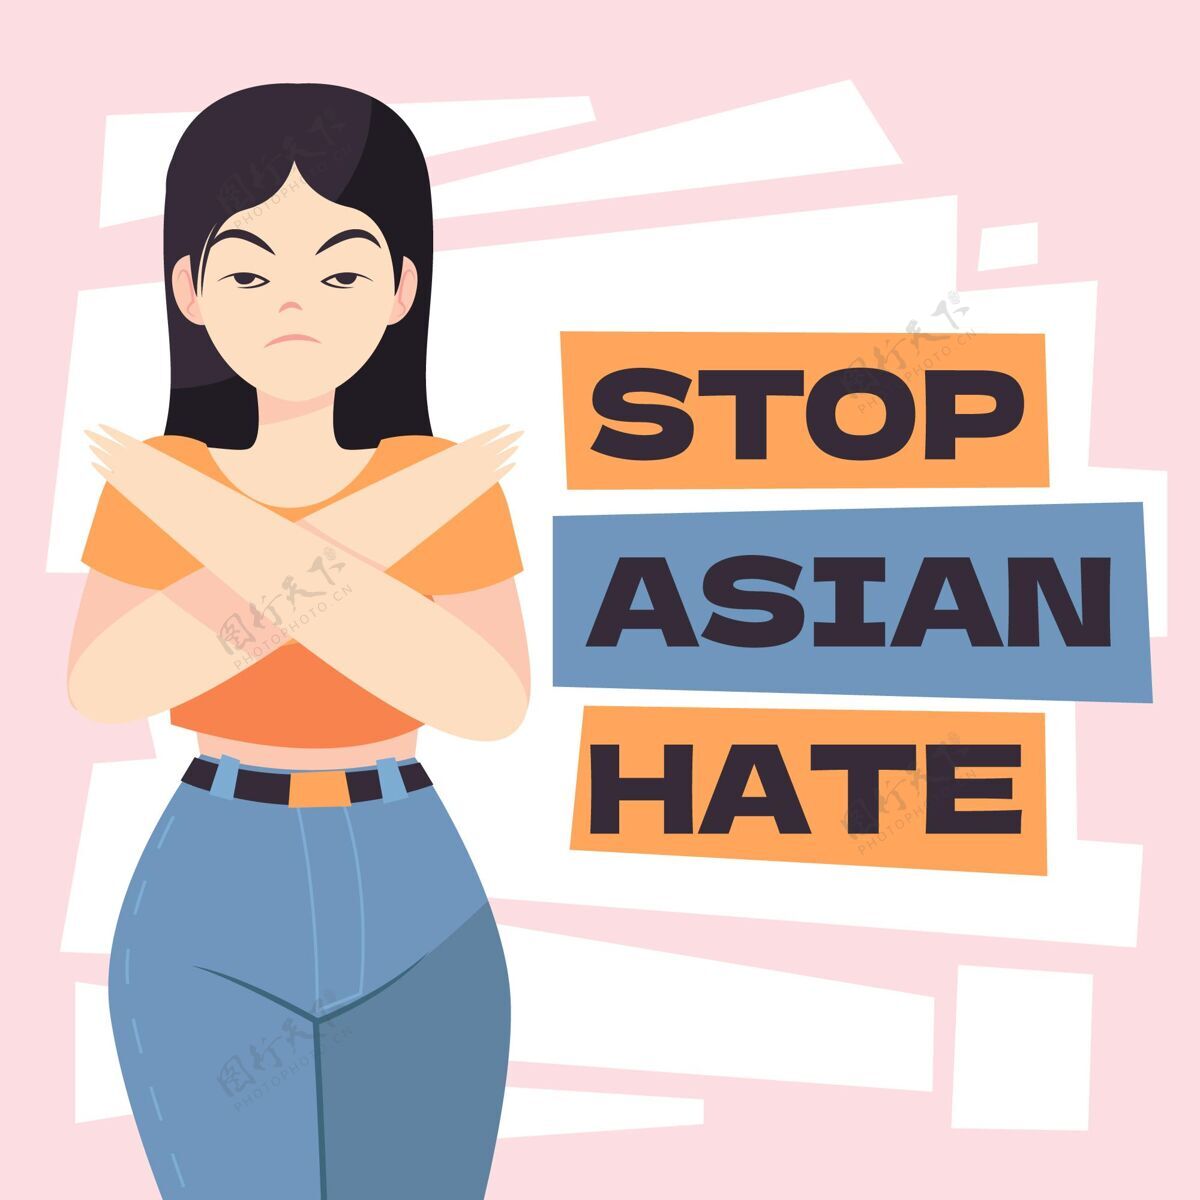 有机平面有机平面停止亚洲仇恨信息说明和平仇恨停止种族主义